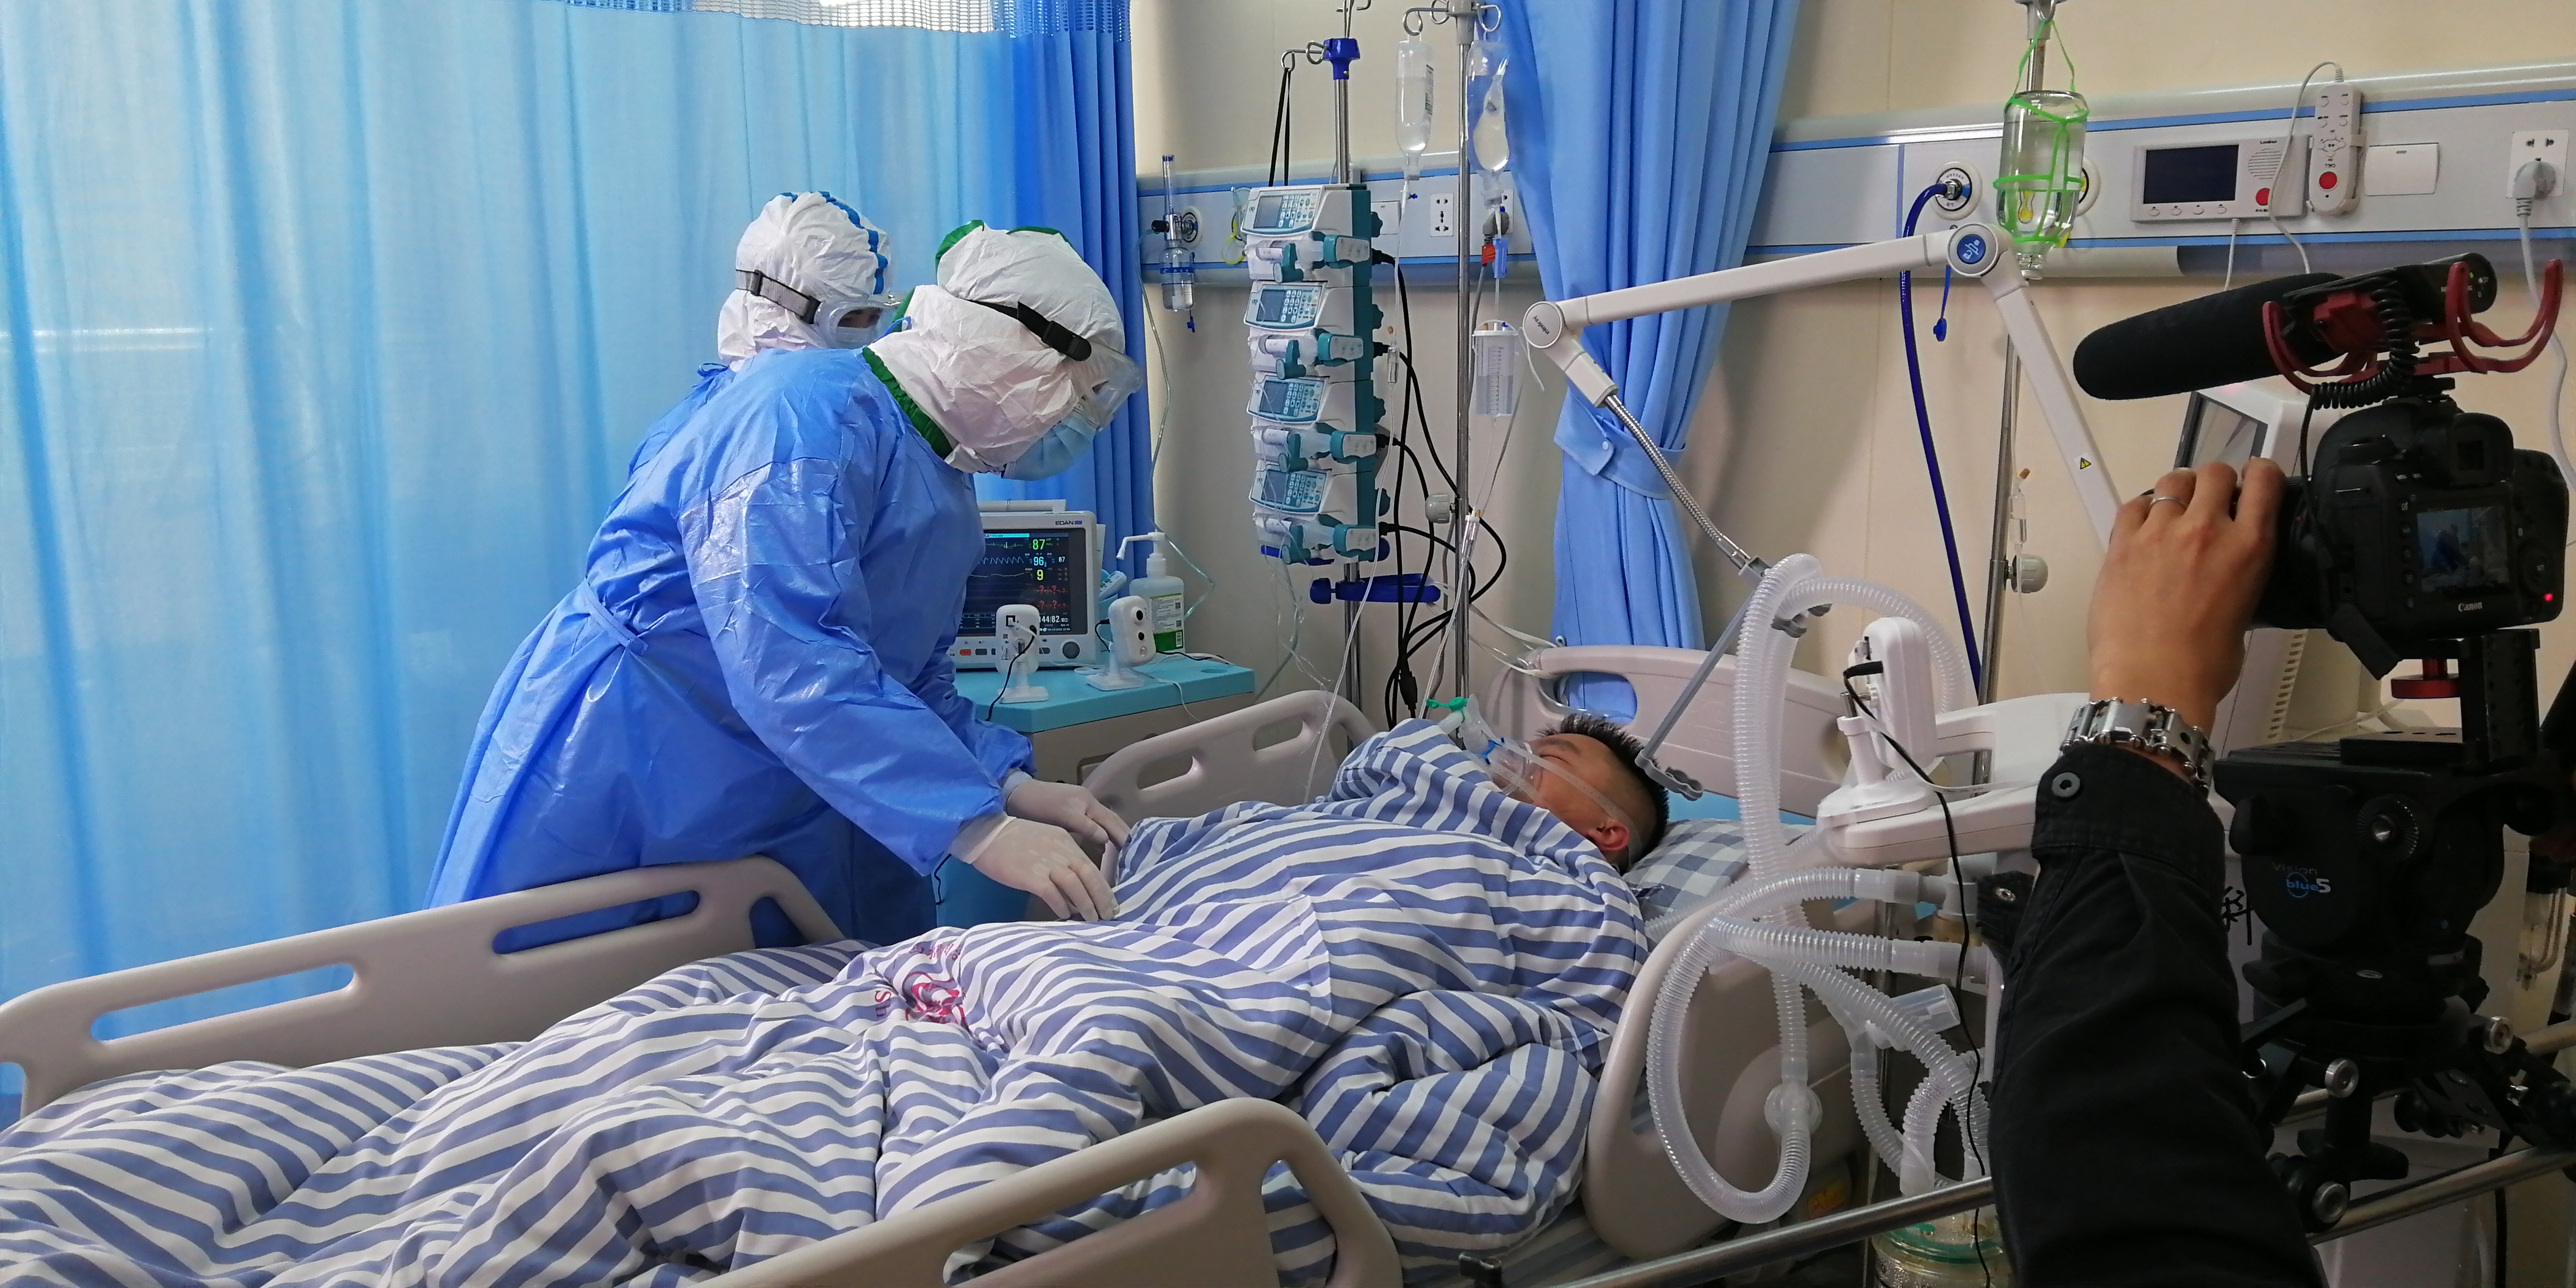 南溪山医院纪录片《一个医院的战疫》入选全国「十大优秀案例」 